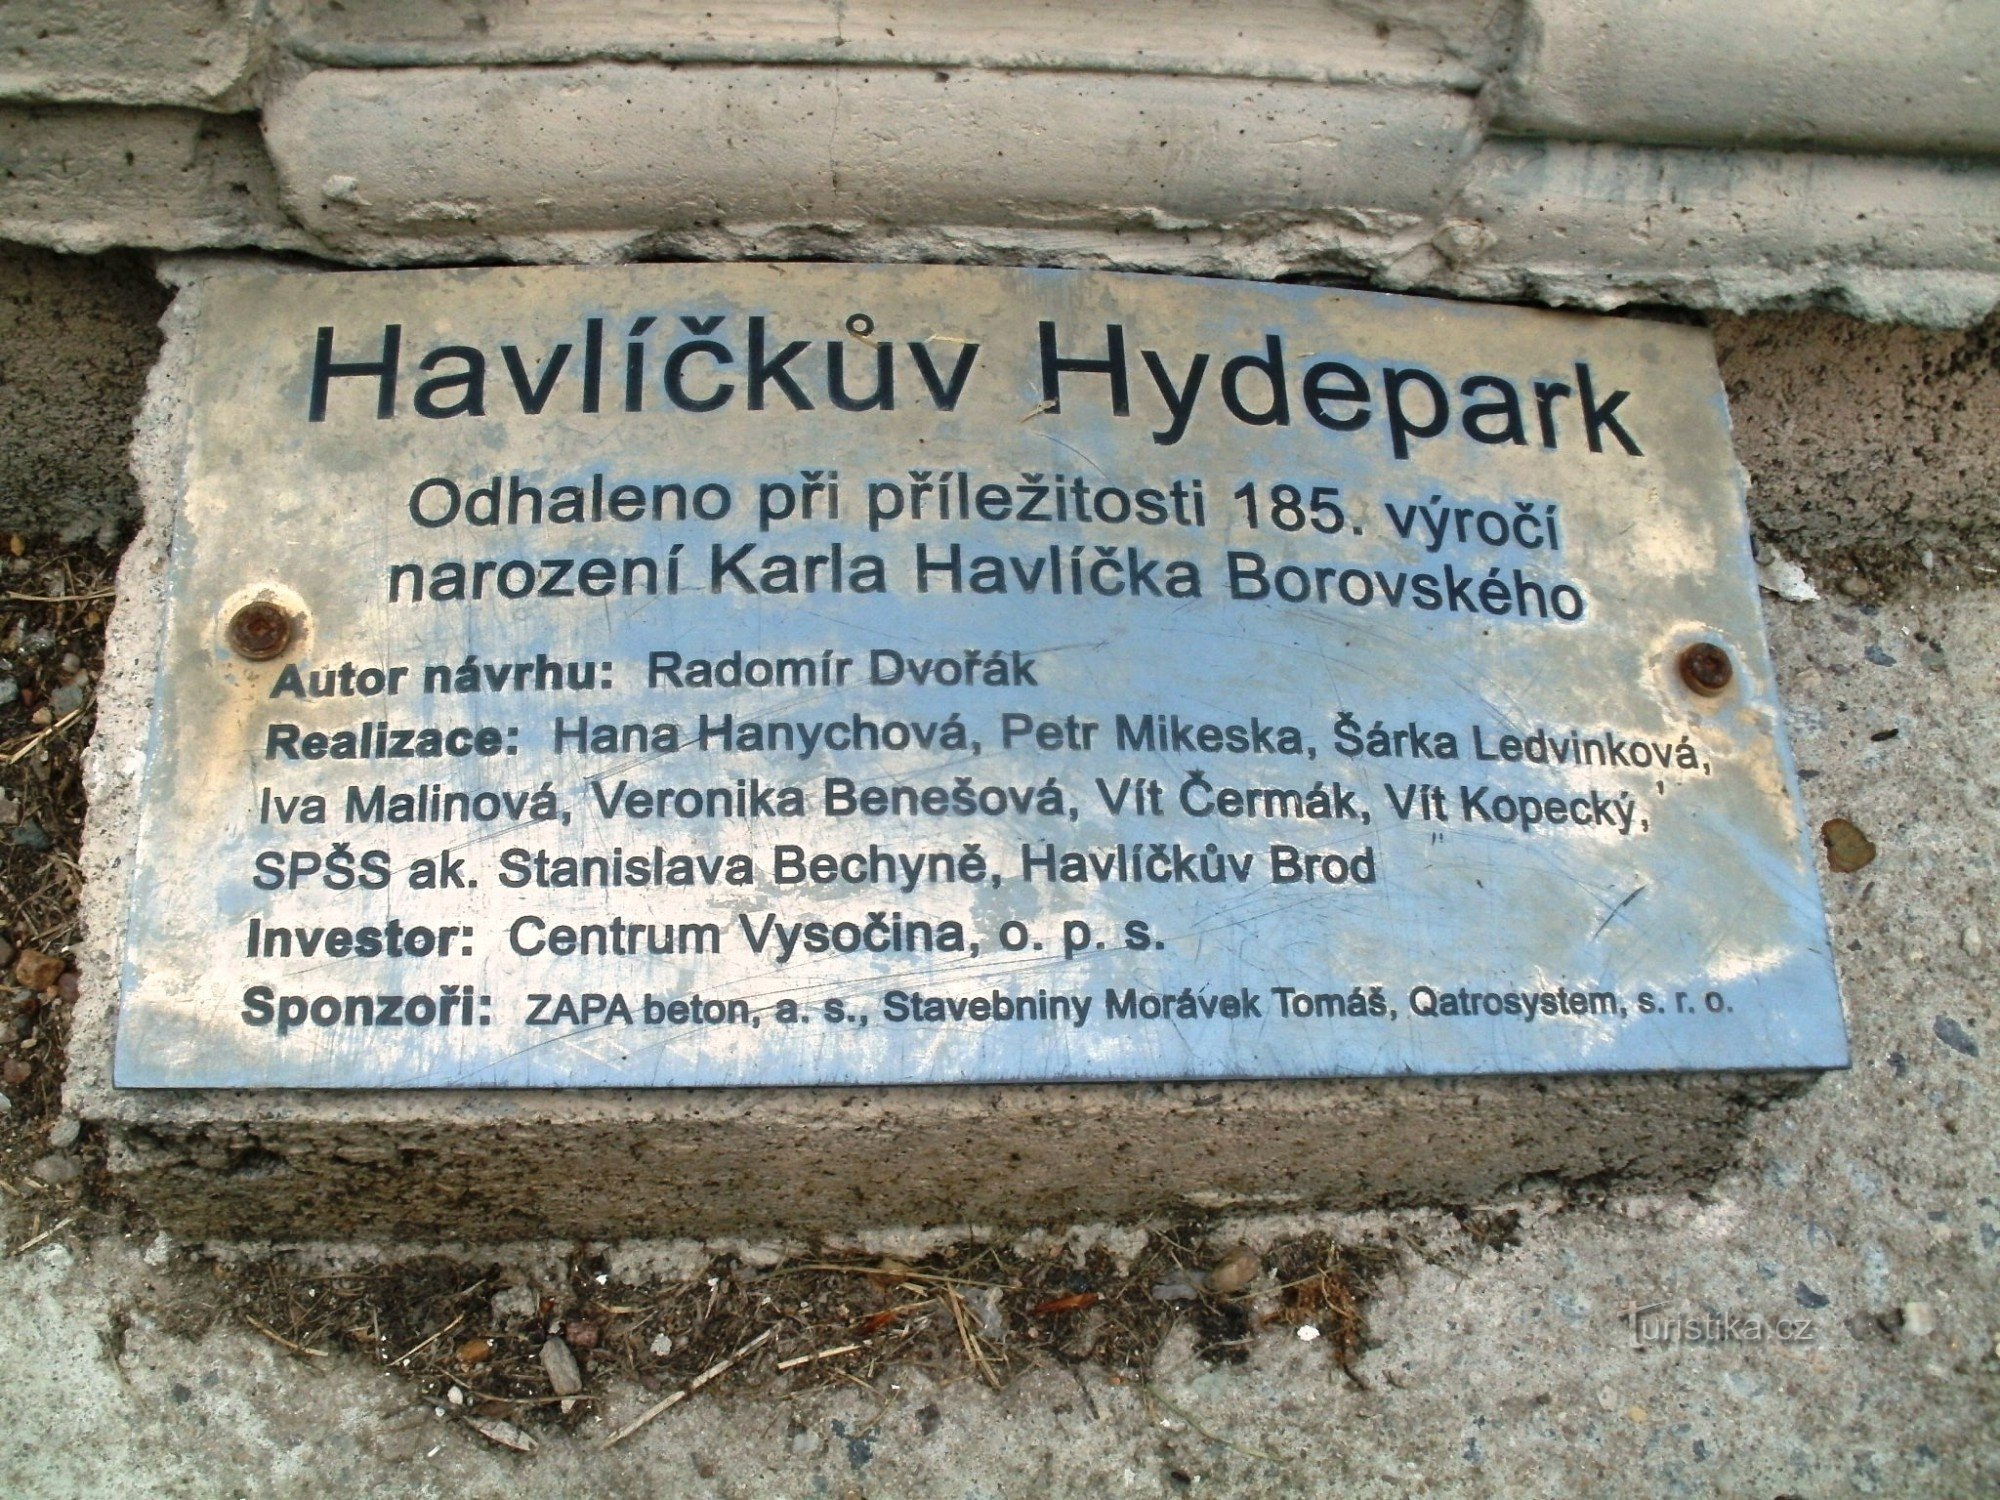 Havlíčkův Brod - Hydepark Havlíčkův